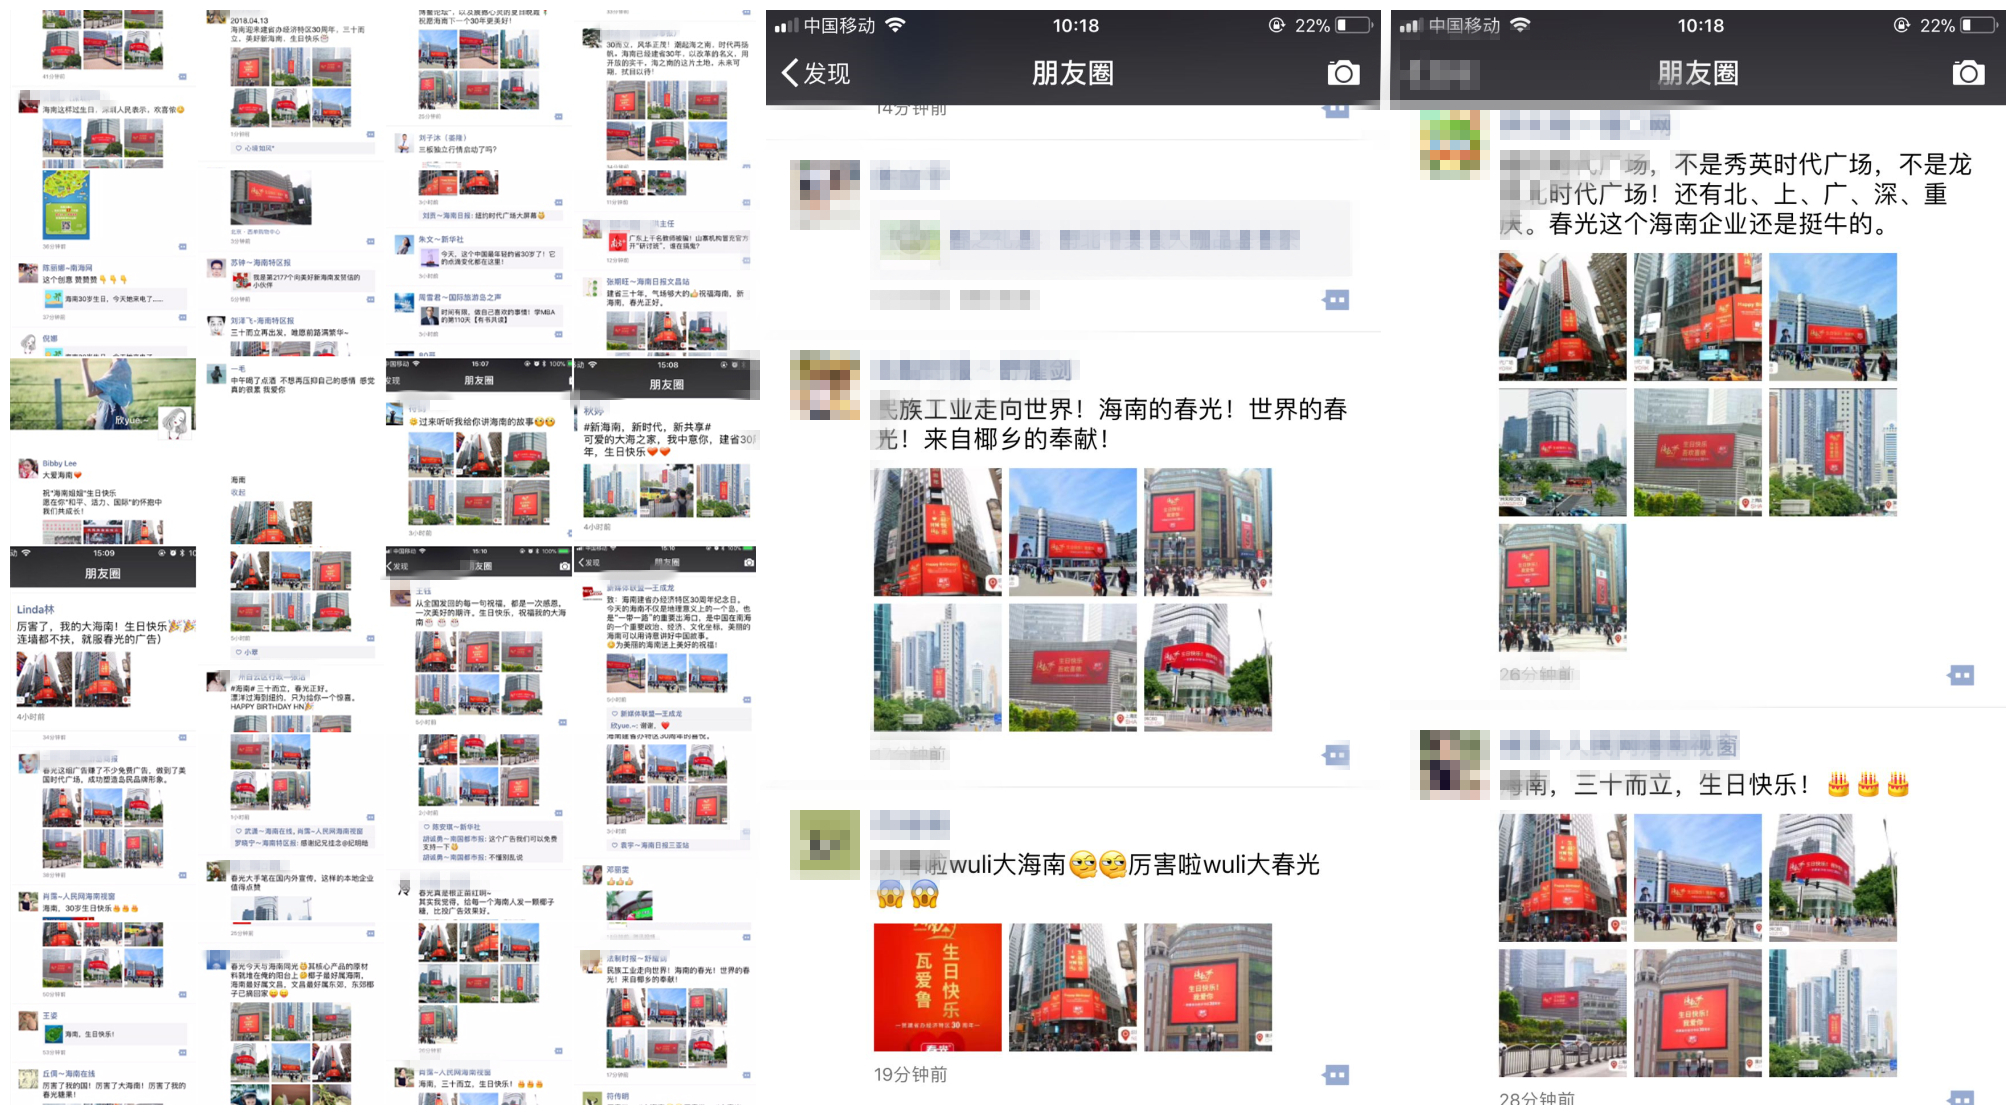 图1-朋友圈呈现一股自发祝福海南的红色暖流.jpg